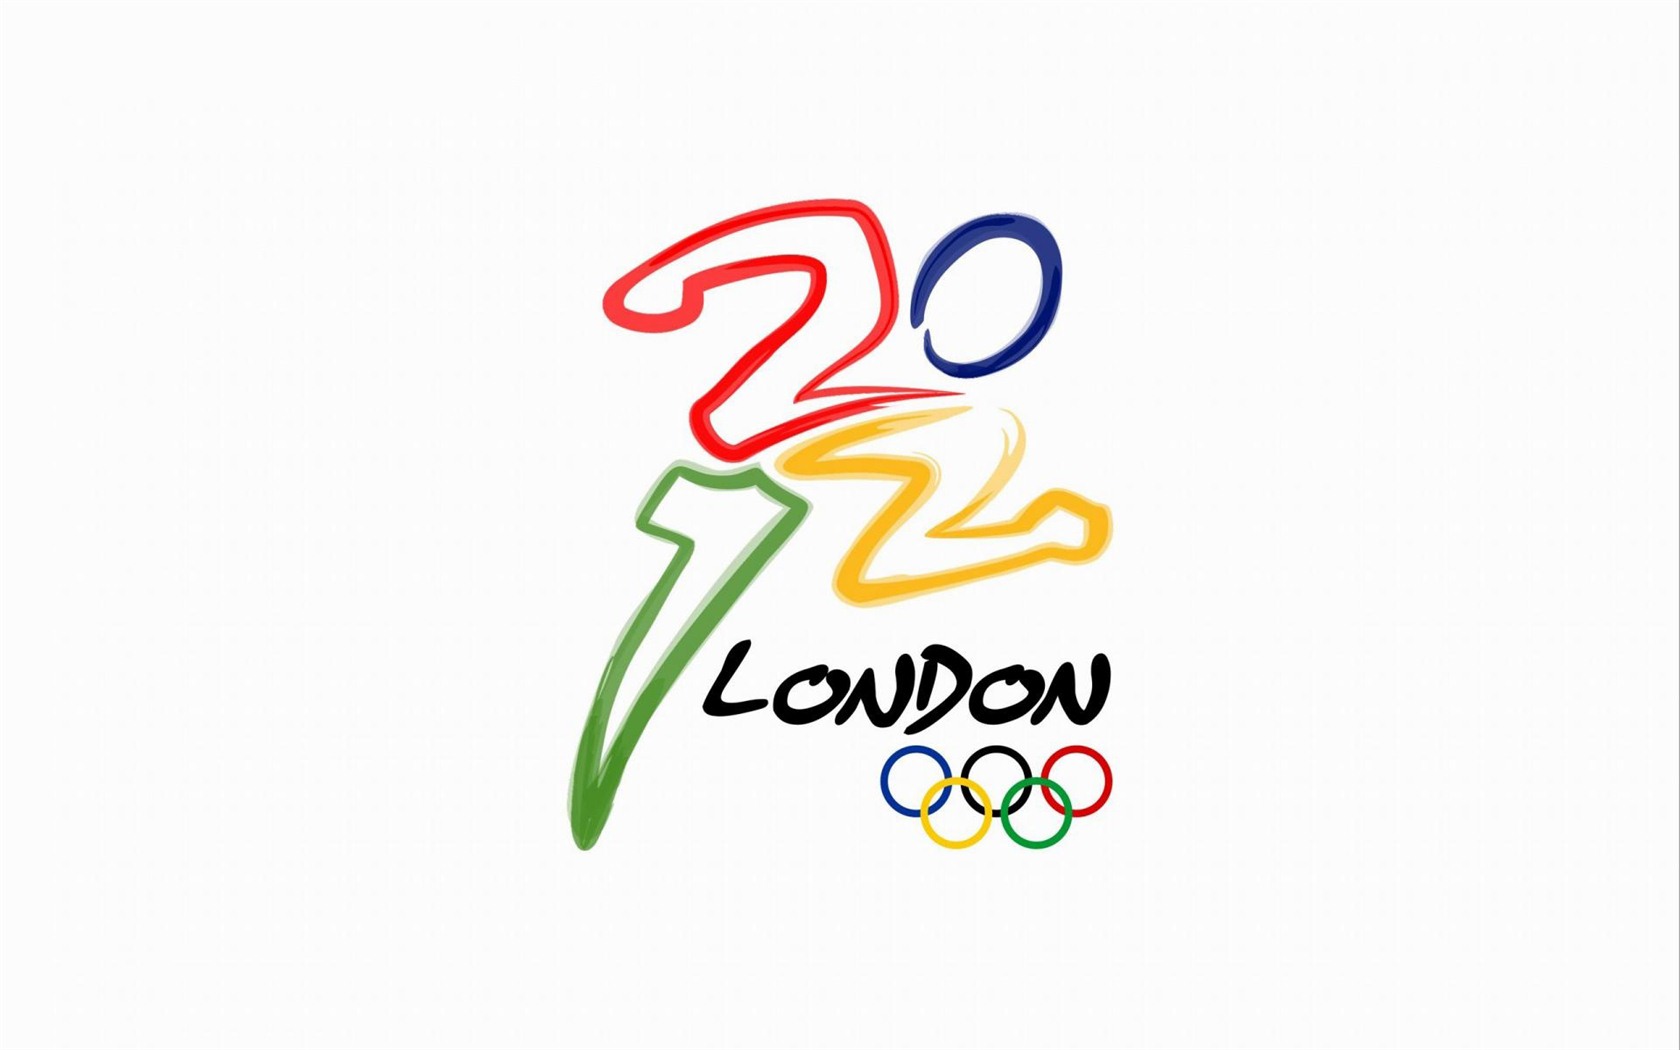 Londres 2012 Olimpiadas fondos temáticos (2) #22 - 1680x1050